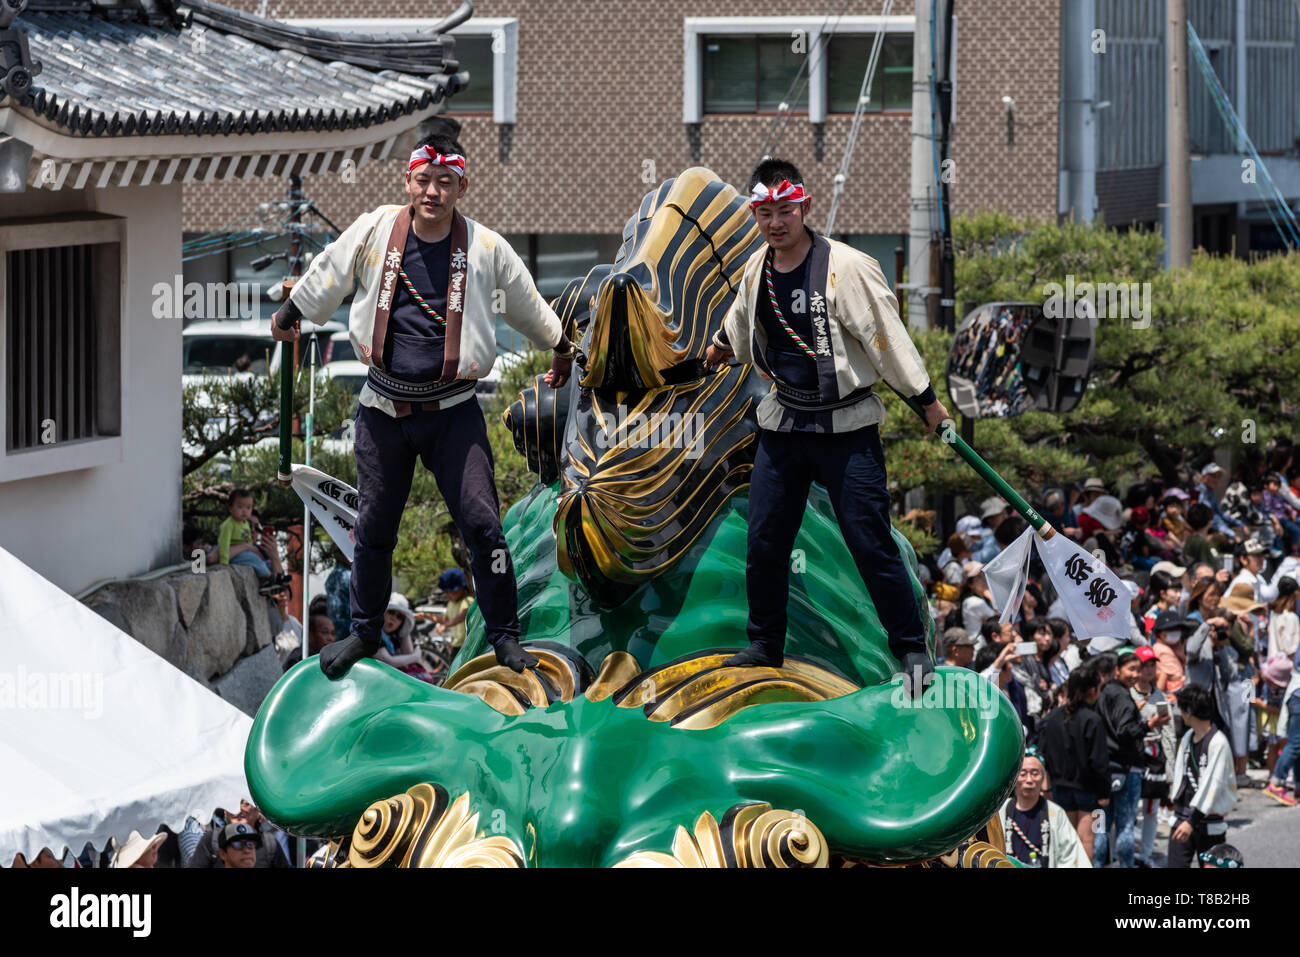 Volks, Japan - Mai 5, 2019: Zwei Männer tragen traditionelle Kleidung auf einem massiven Float bei neuen imperialen Ära sind Iwa' Feier Parade Stockfoto